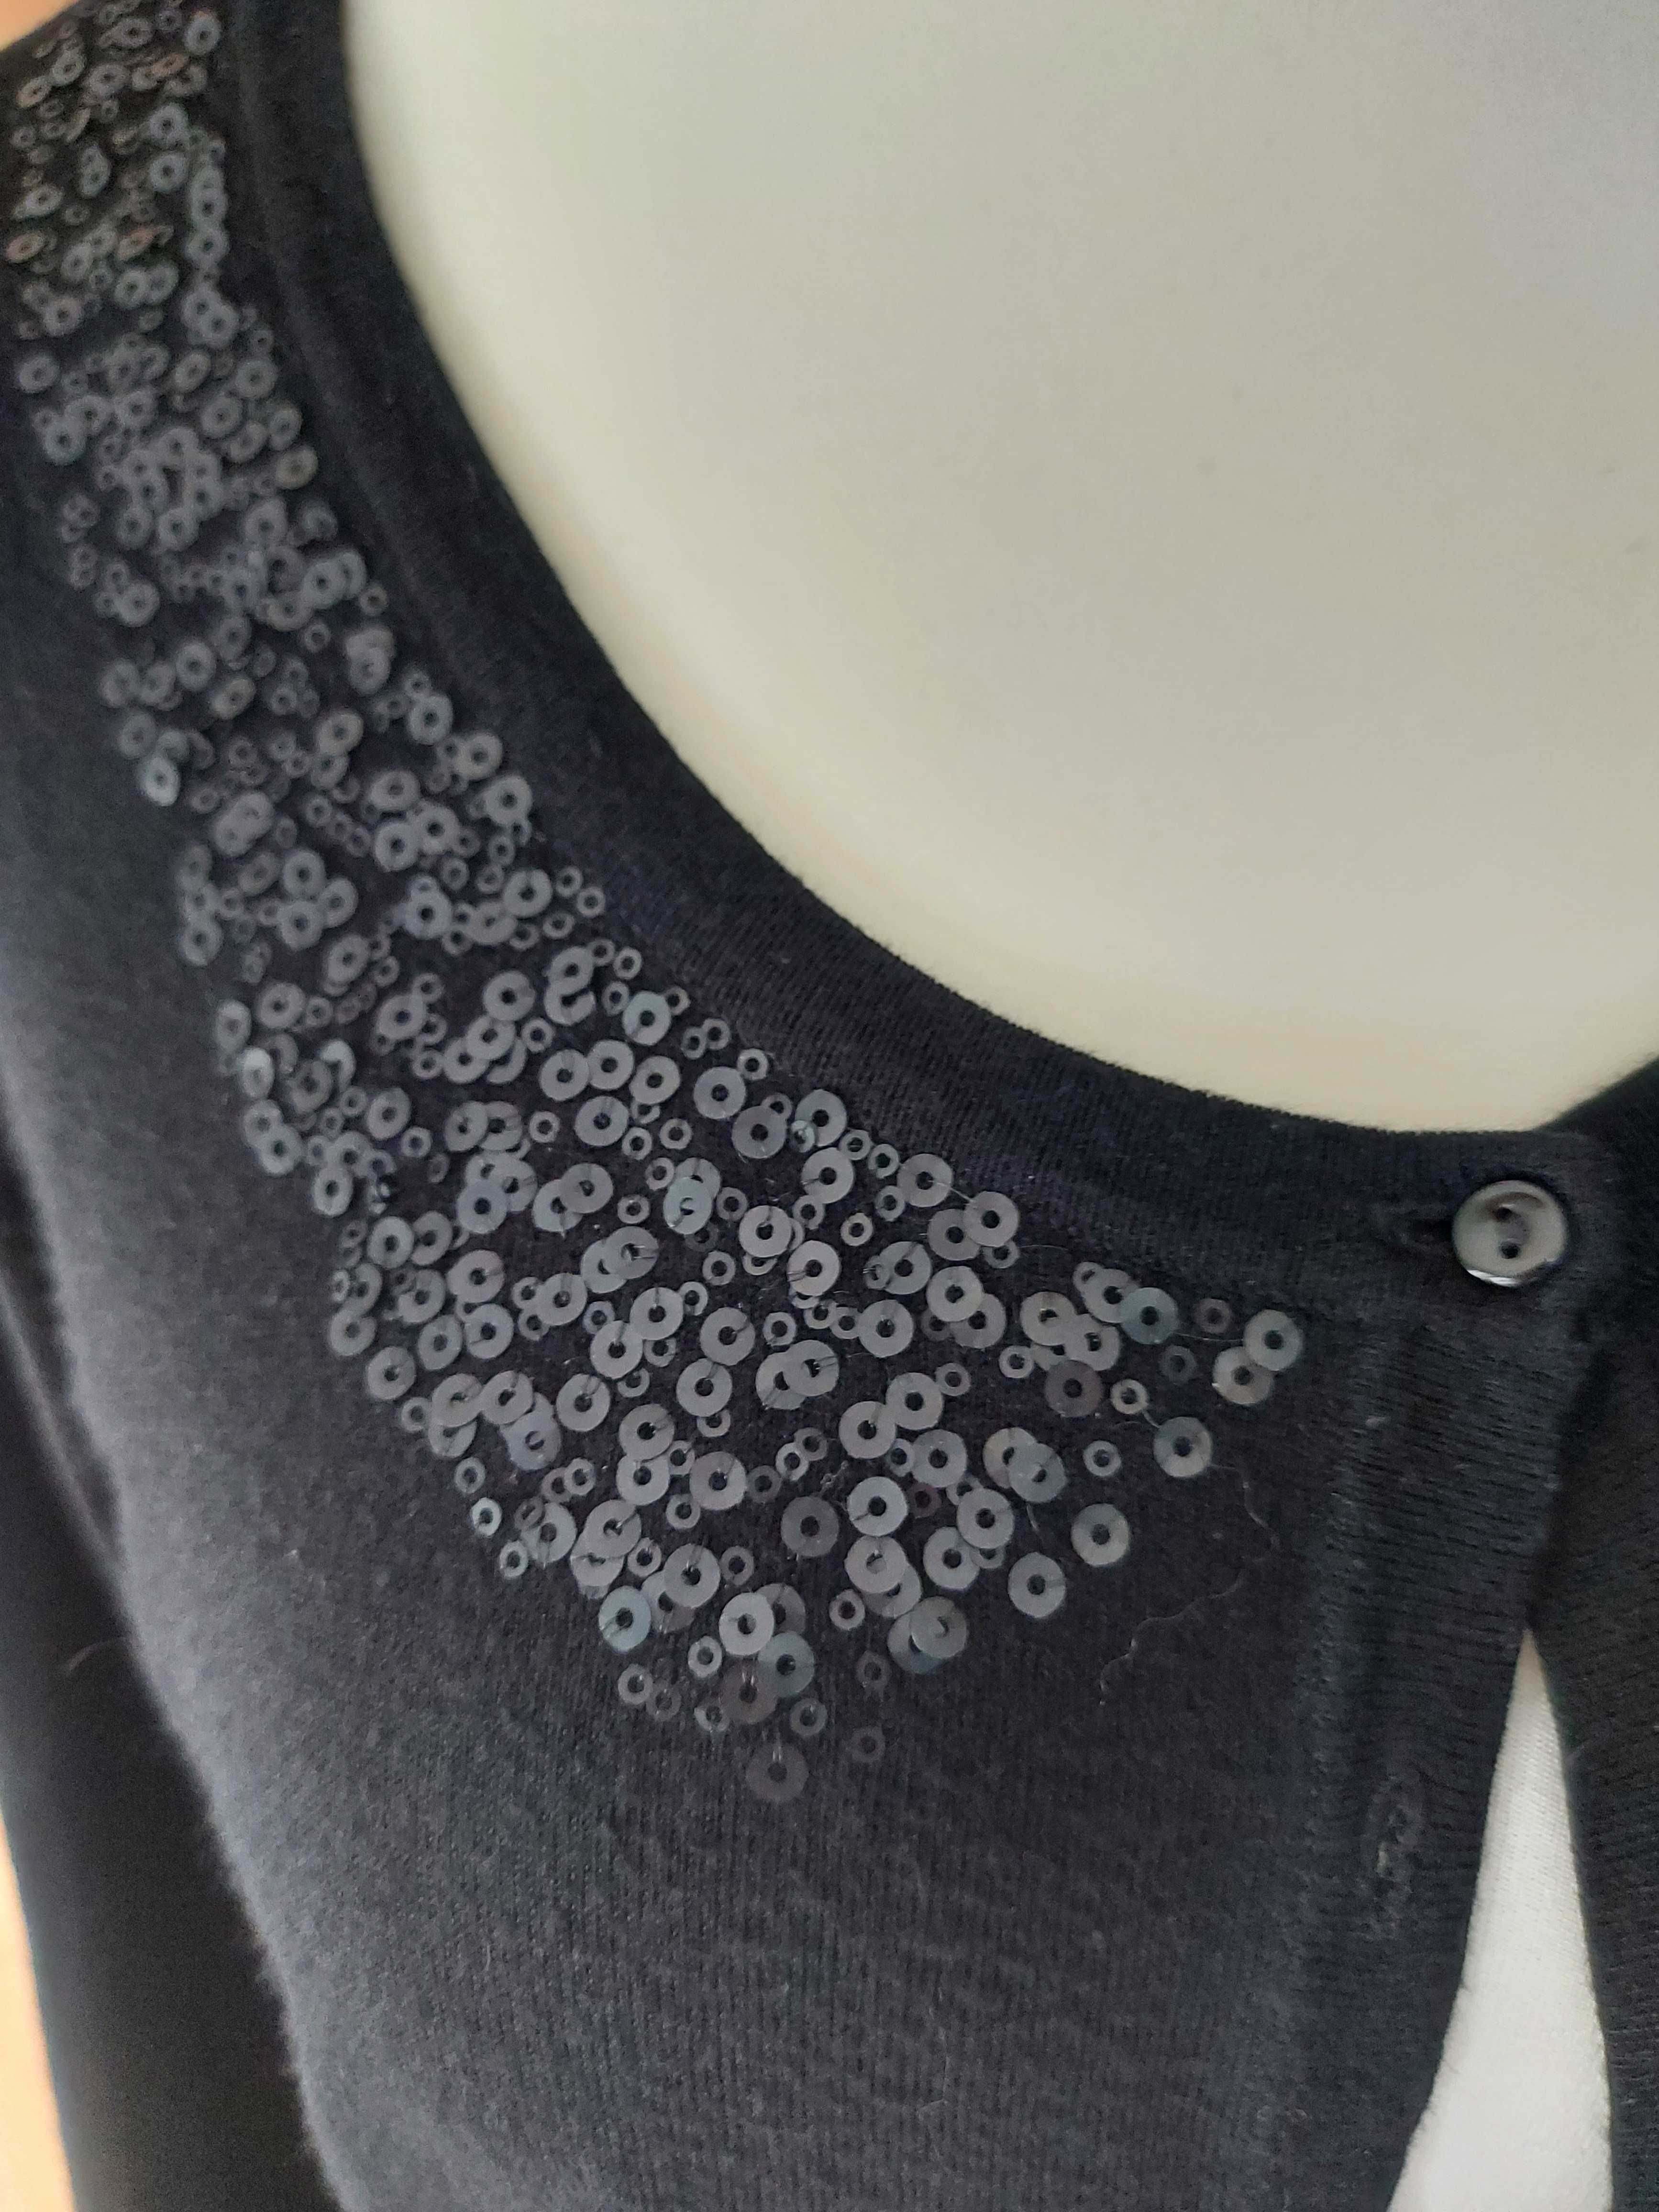 Czarny sweterek zapinany na guziki z ozdobną aplikacja na dekoldzie